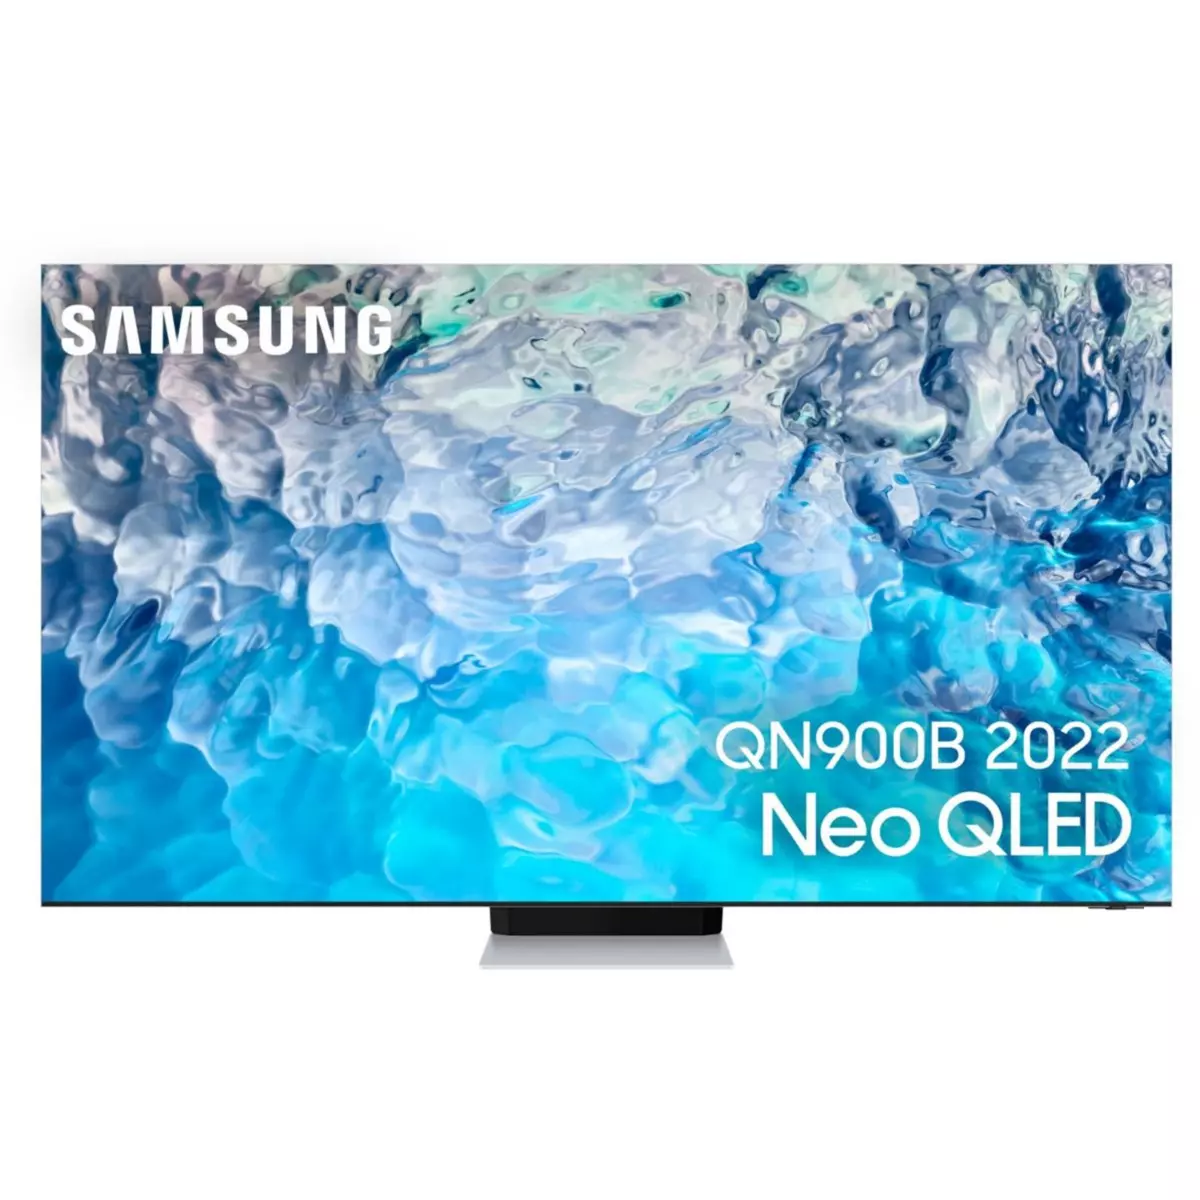 Samsung TV QLED NeoQLED QE75QN900B 2022